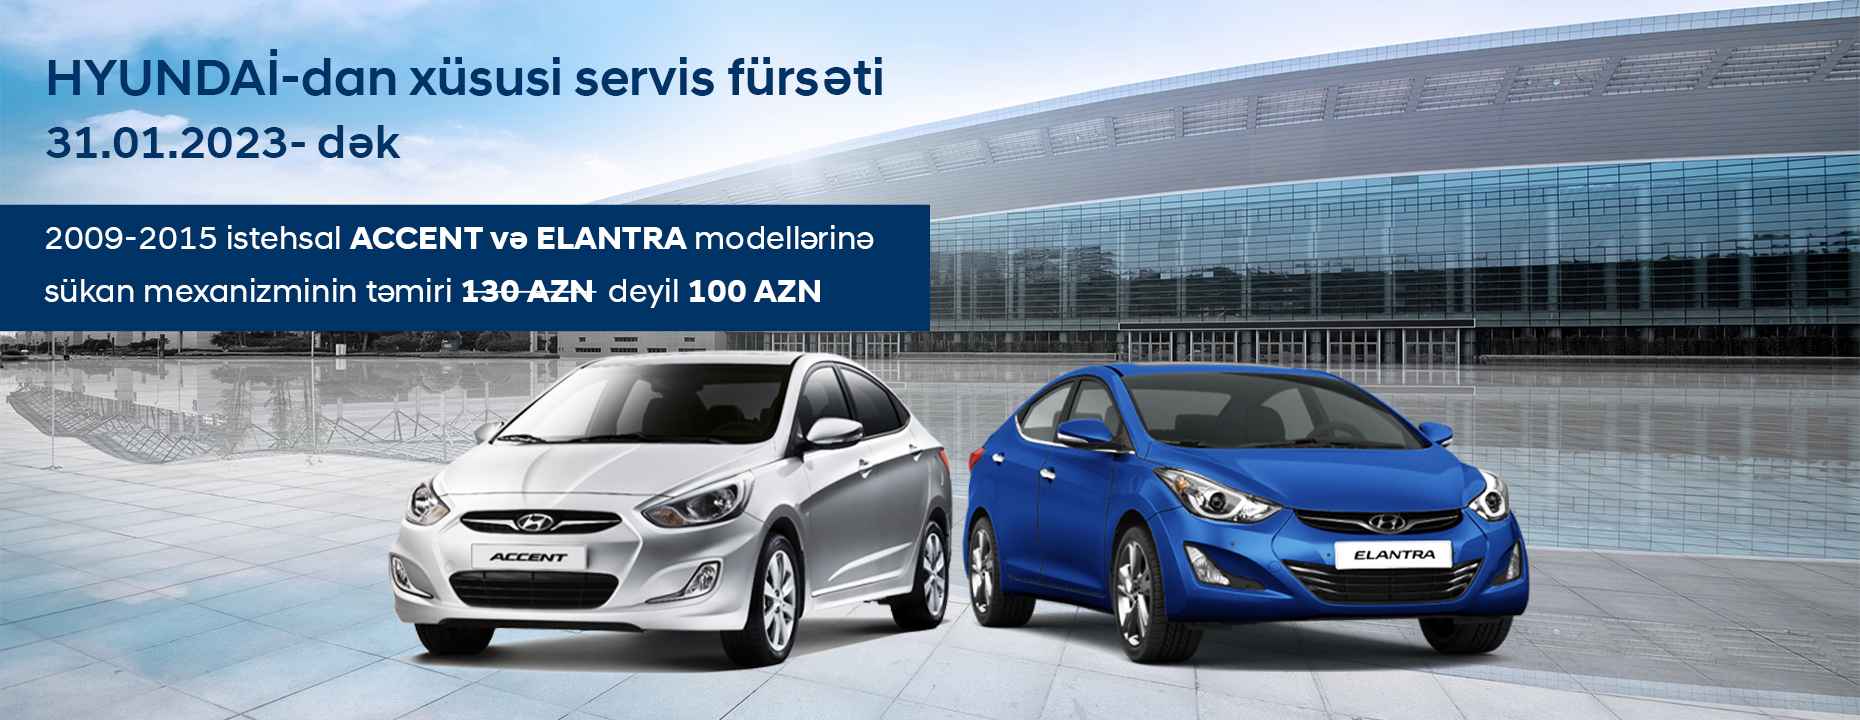 Hyundai-dan Elantra və Accent sahiblərinə xüsusi servis təklifi!